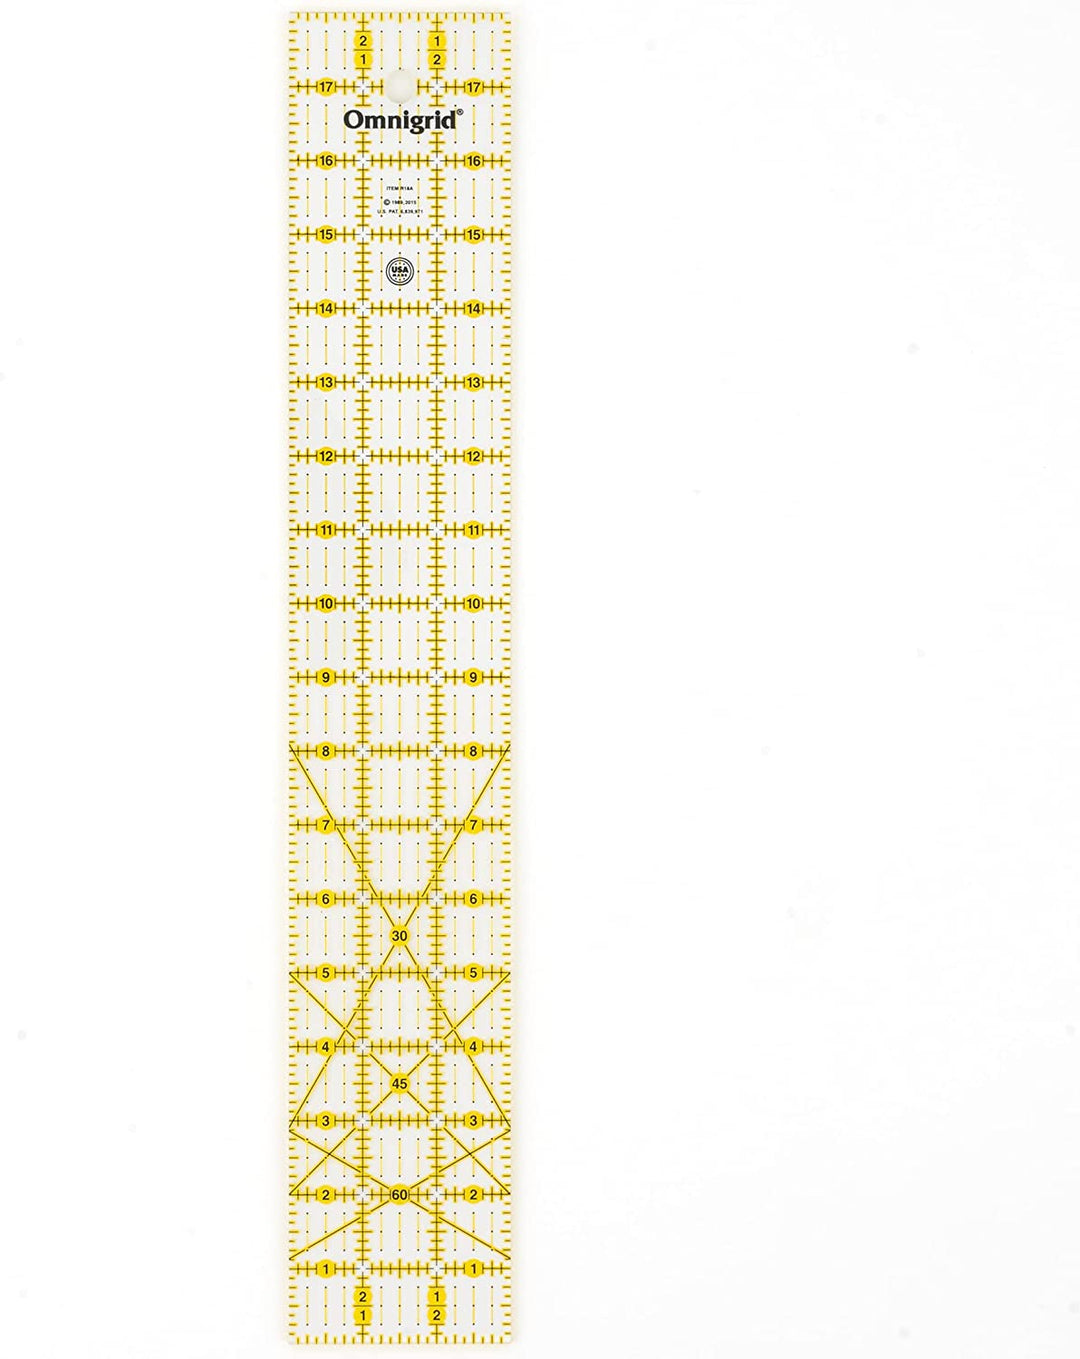 Prym Omnigrid Universal ruler 3x18 inches